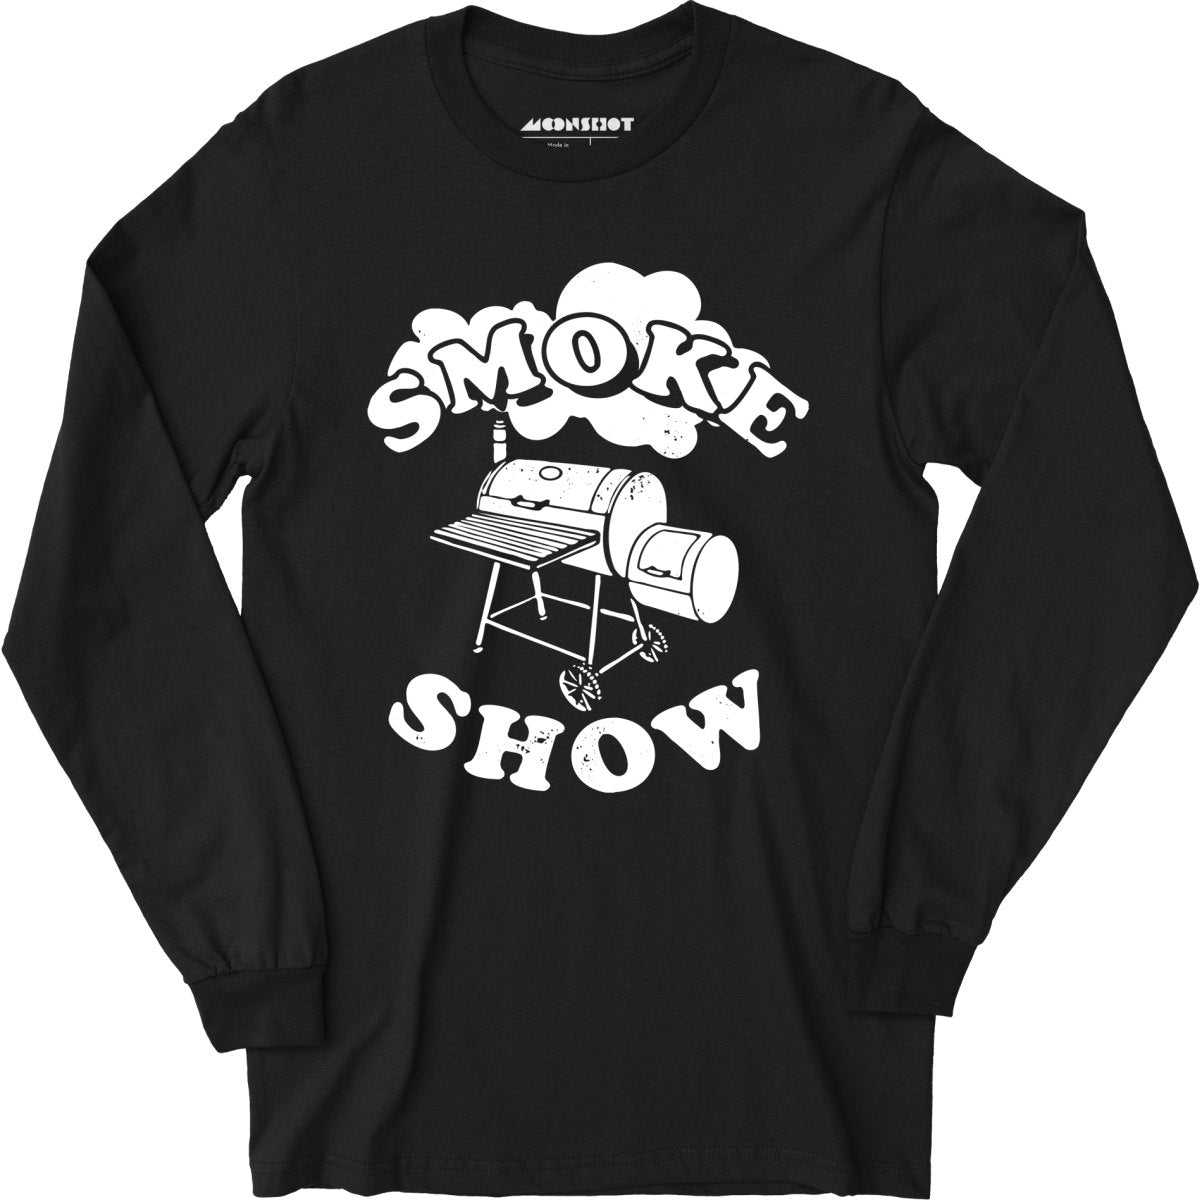 Smoke Show - Long Sleeve T-Shirt